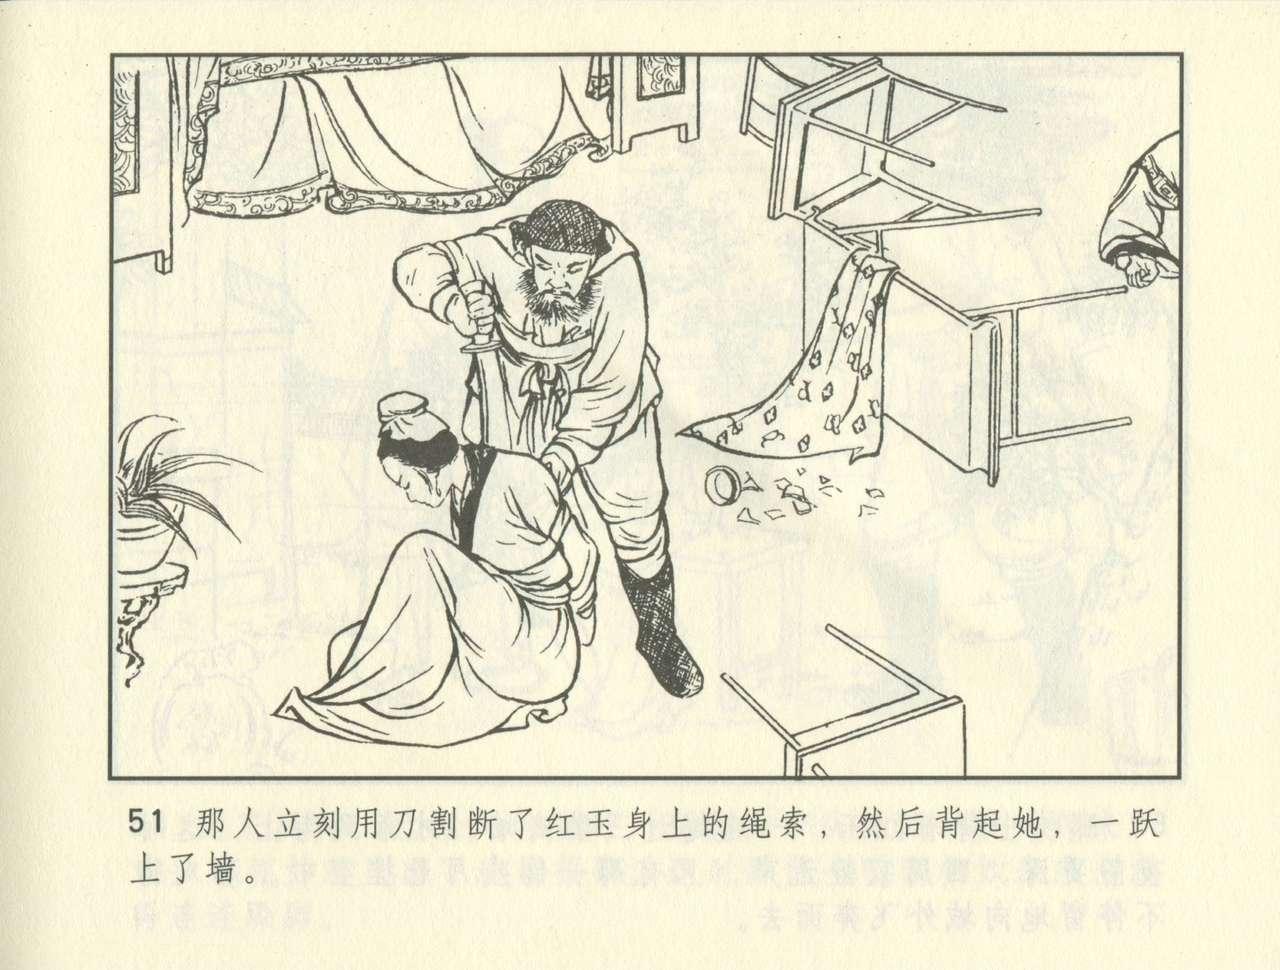 聊斋志异 张玮等绘 天津人民美术出版社 卷二十一 ~ 三十 391